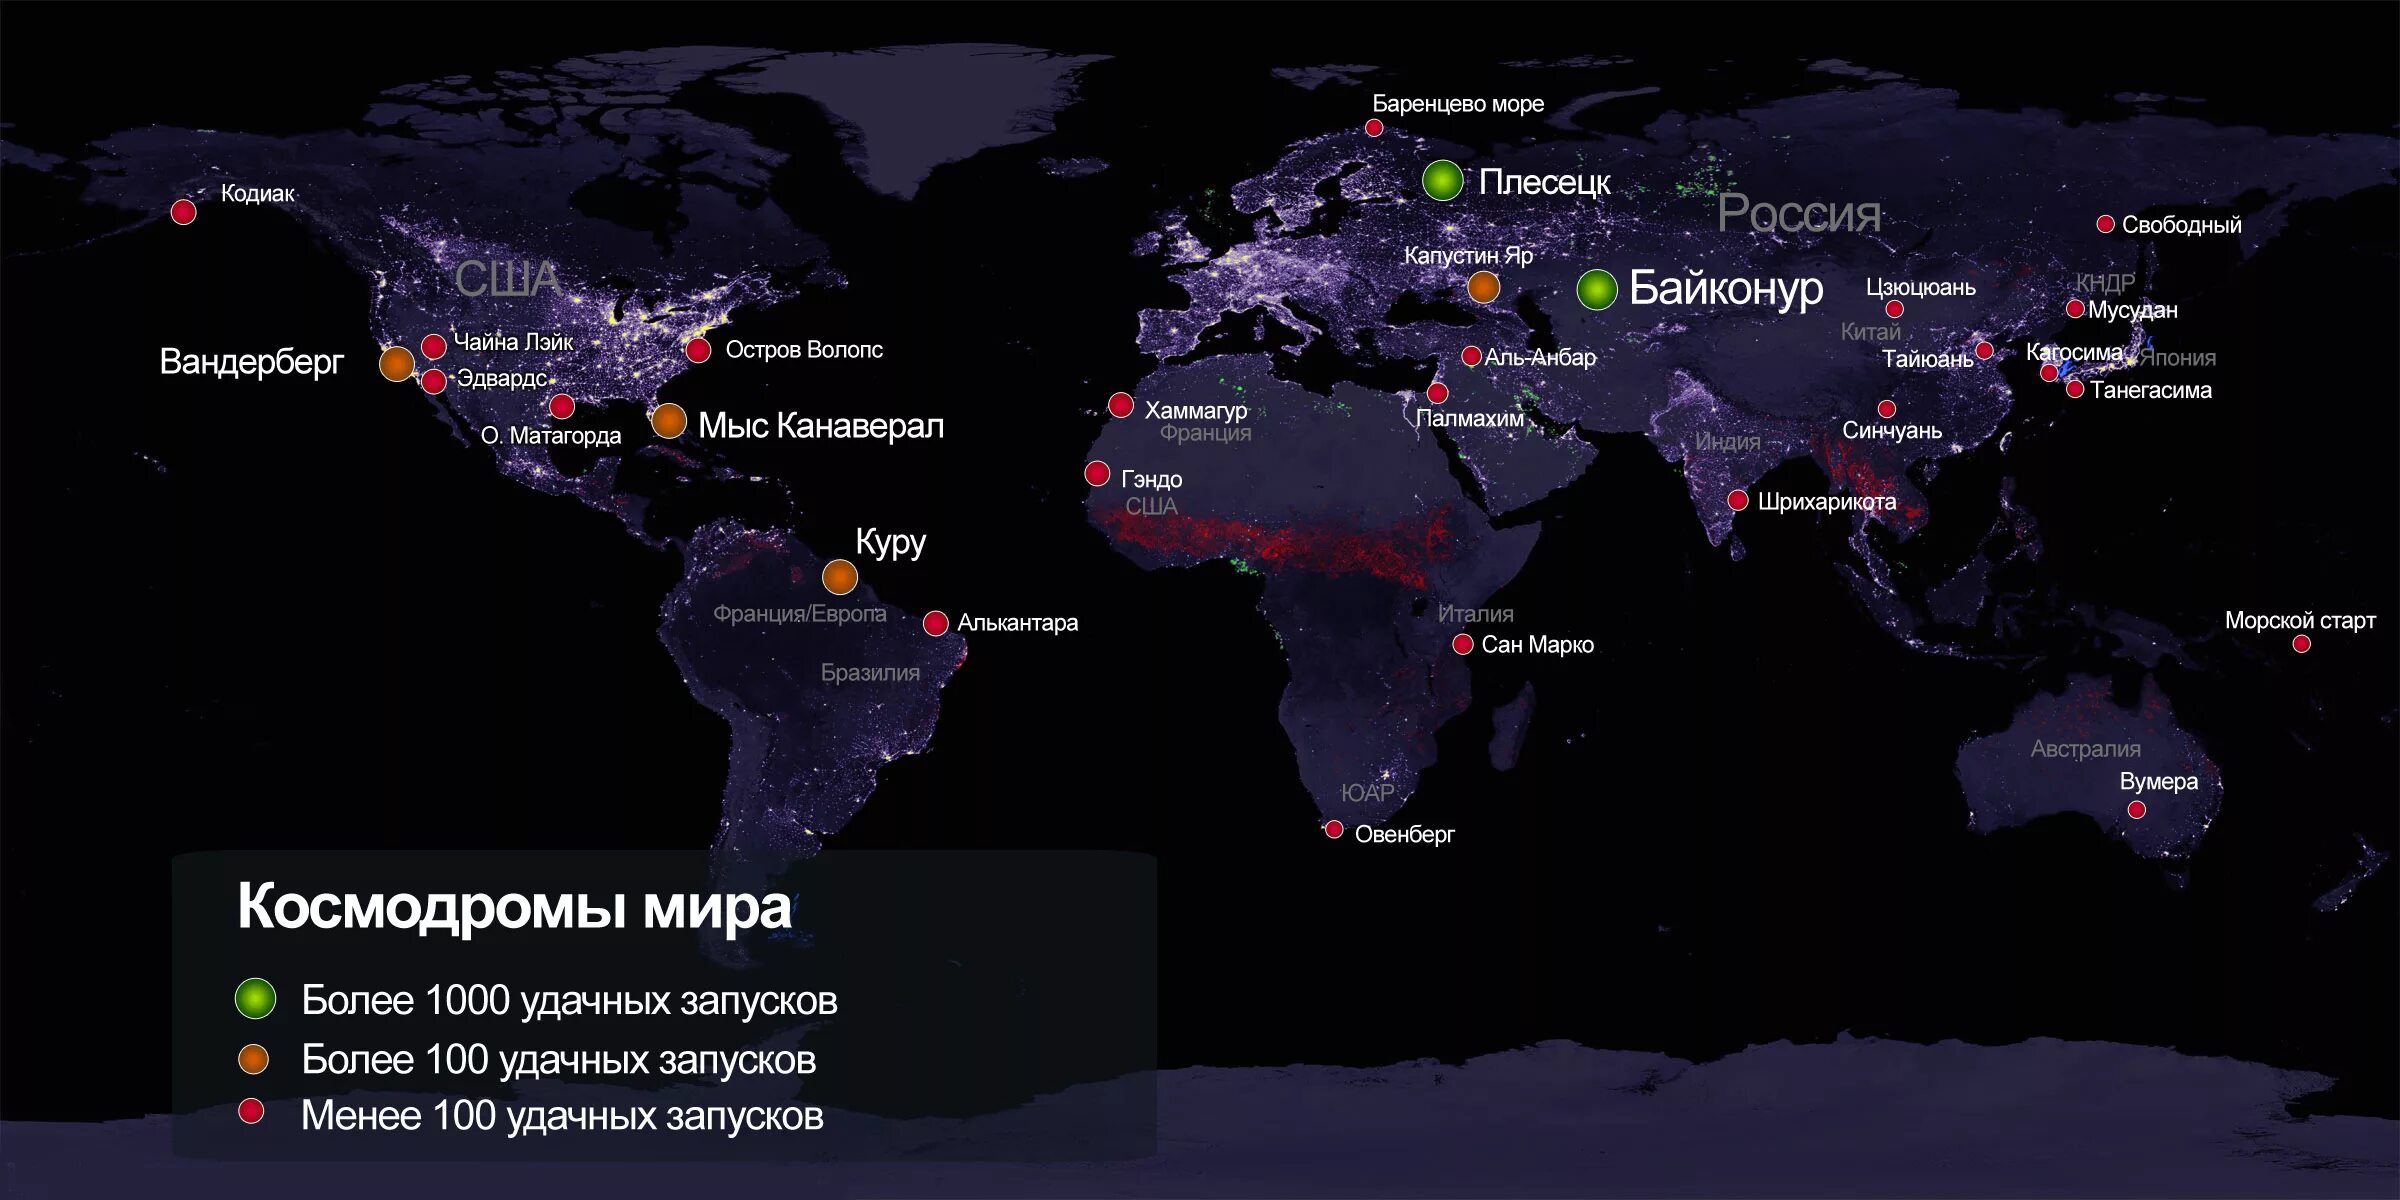 Сколько космодромов в россии на сегодняшний. Расположение космодромов в мире. Российские космодромы на карте. Карта космодромов в мире. Космодромы России на карте России.